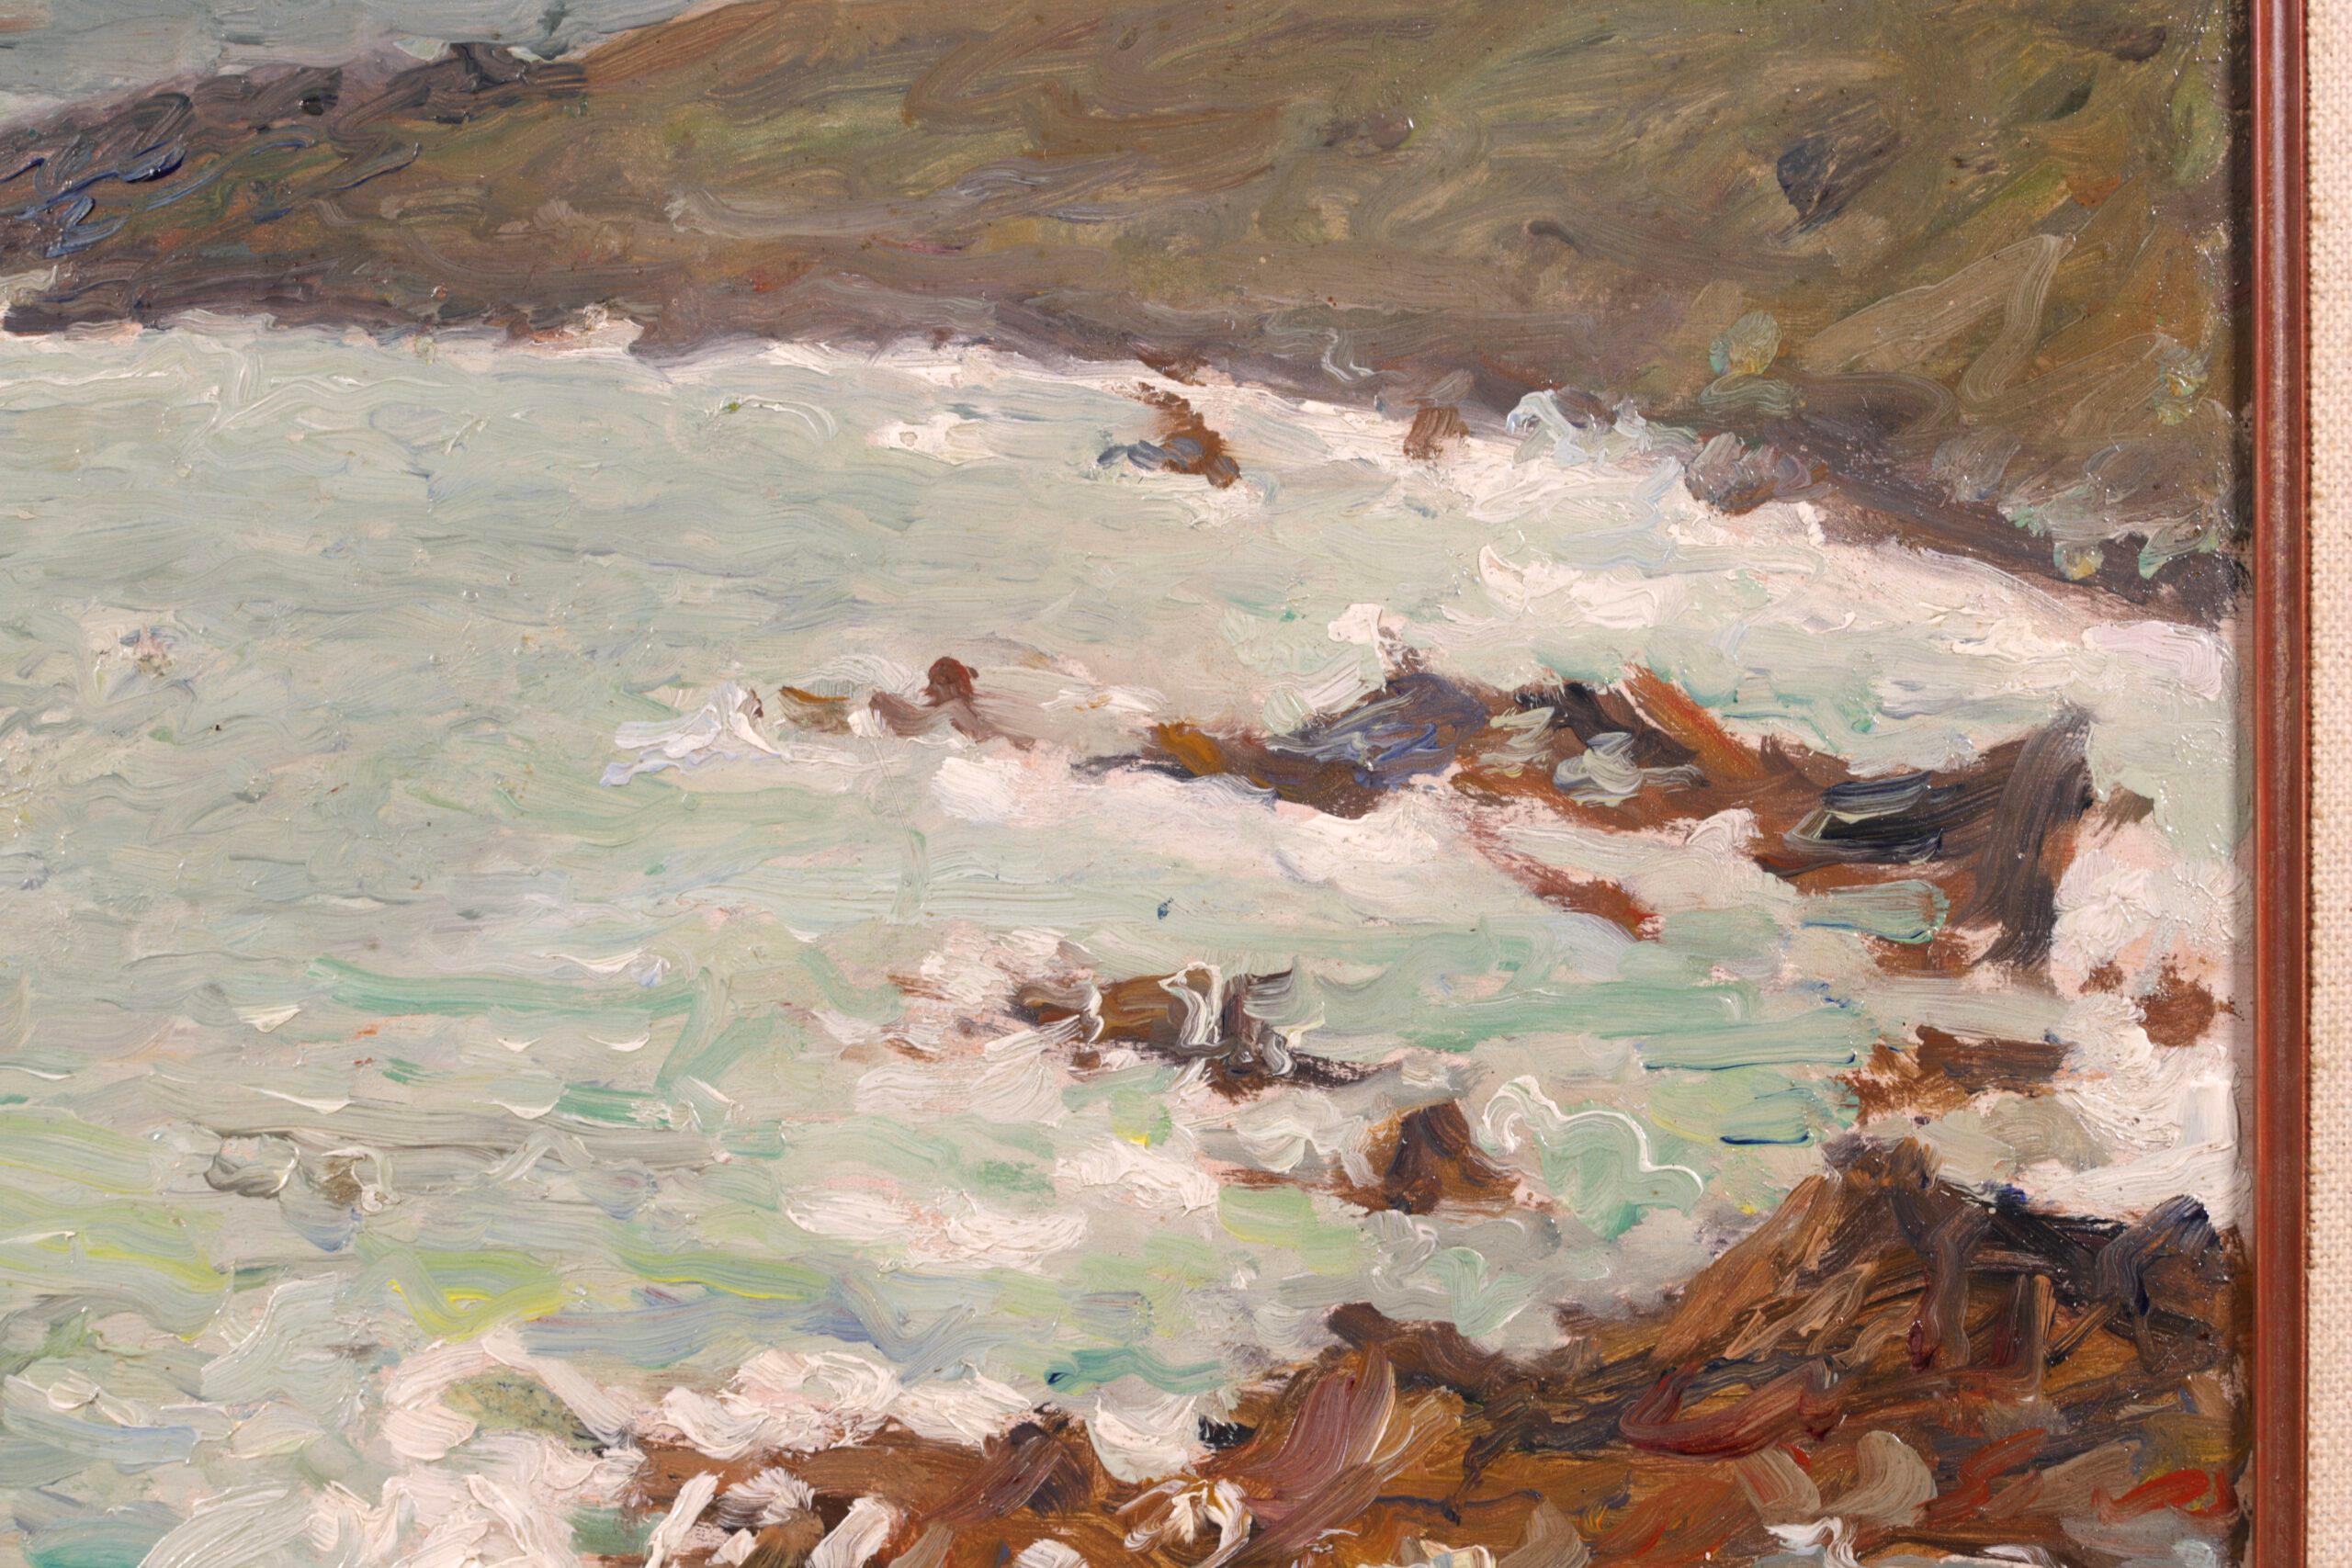 Rochers par temps gris - Impressionist Seascape Oil Painting by Emilio Boggio For Sale 1